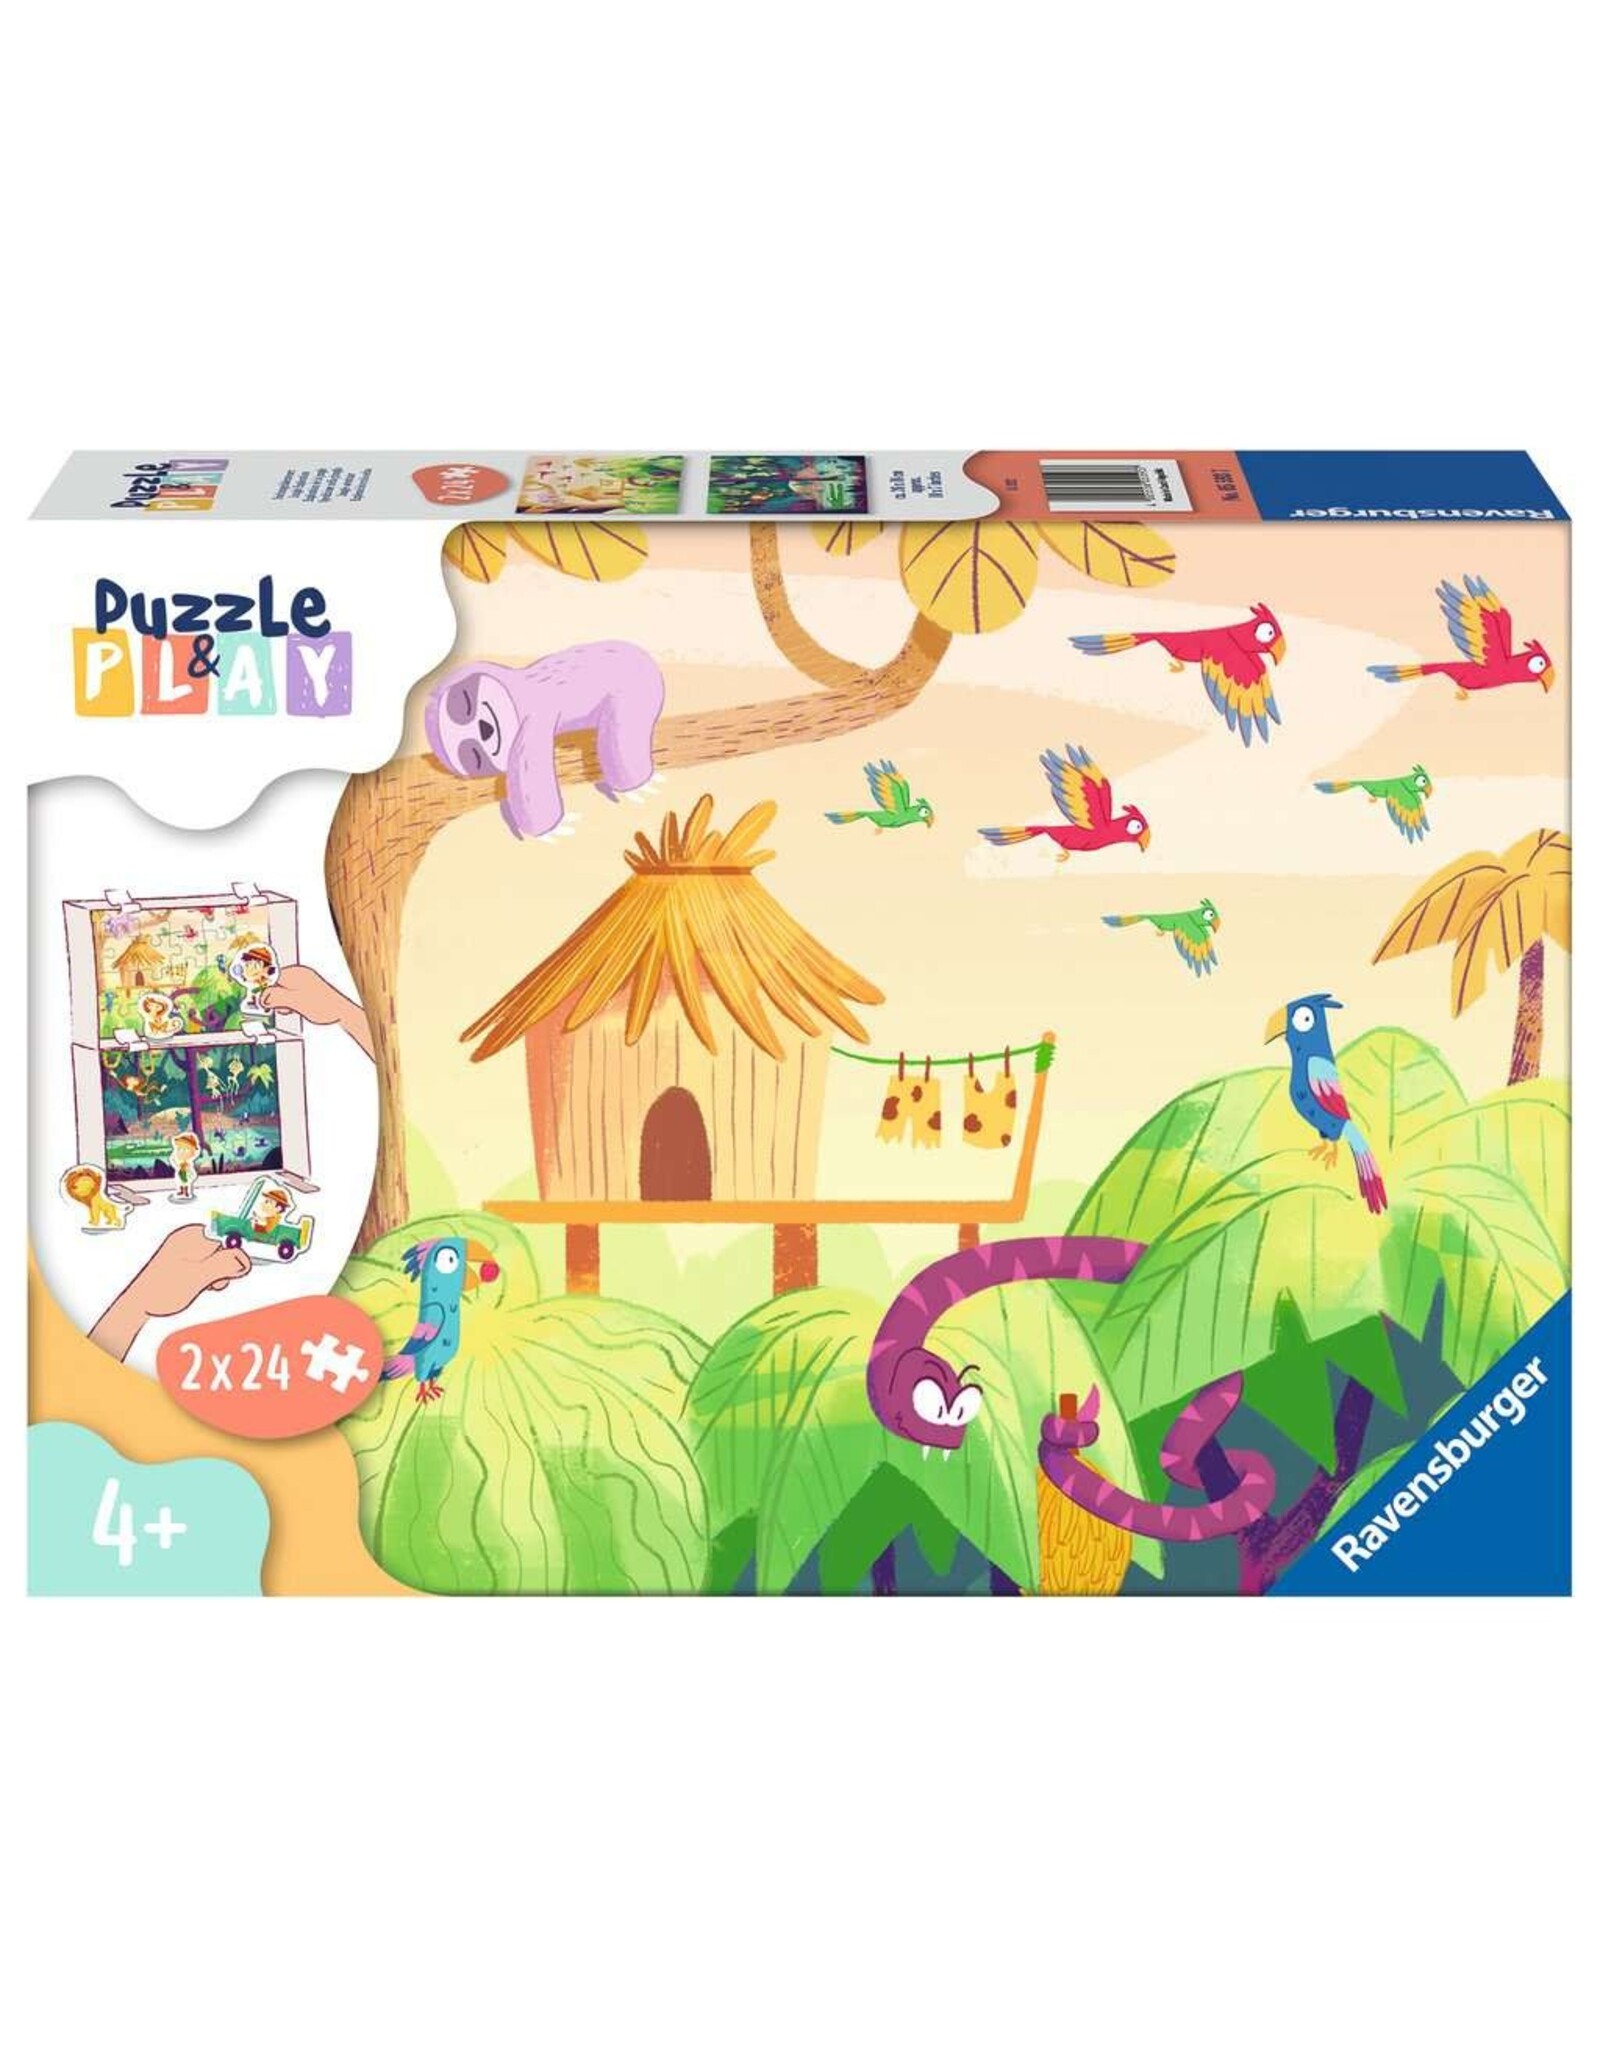 Ravensburger Puzzle & Play Jungle Exploration 2x24 Piece Puzzle